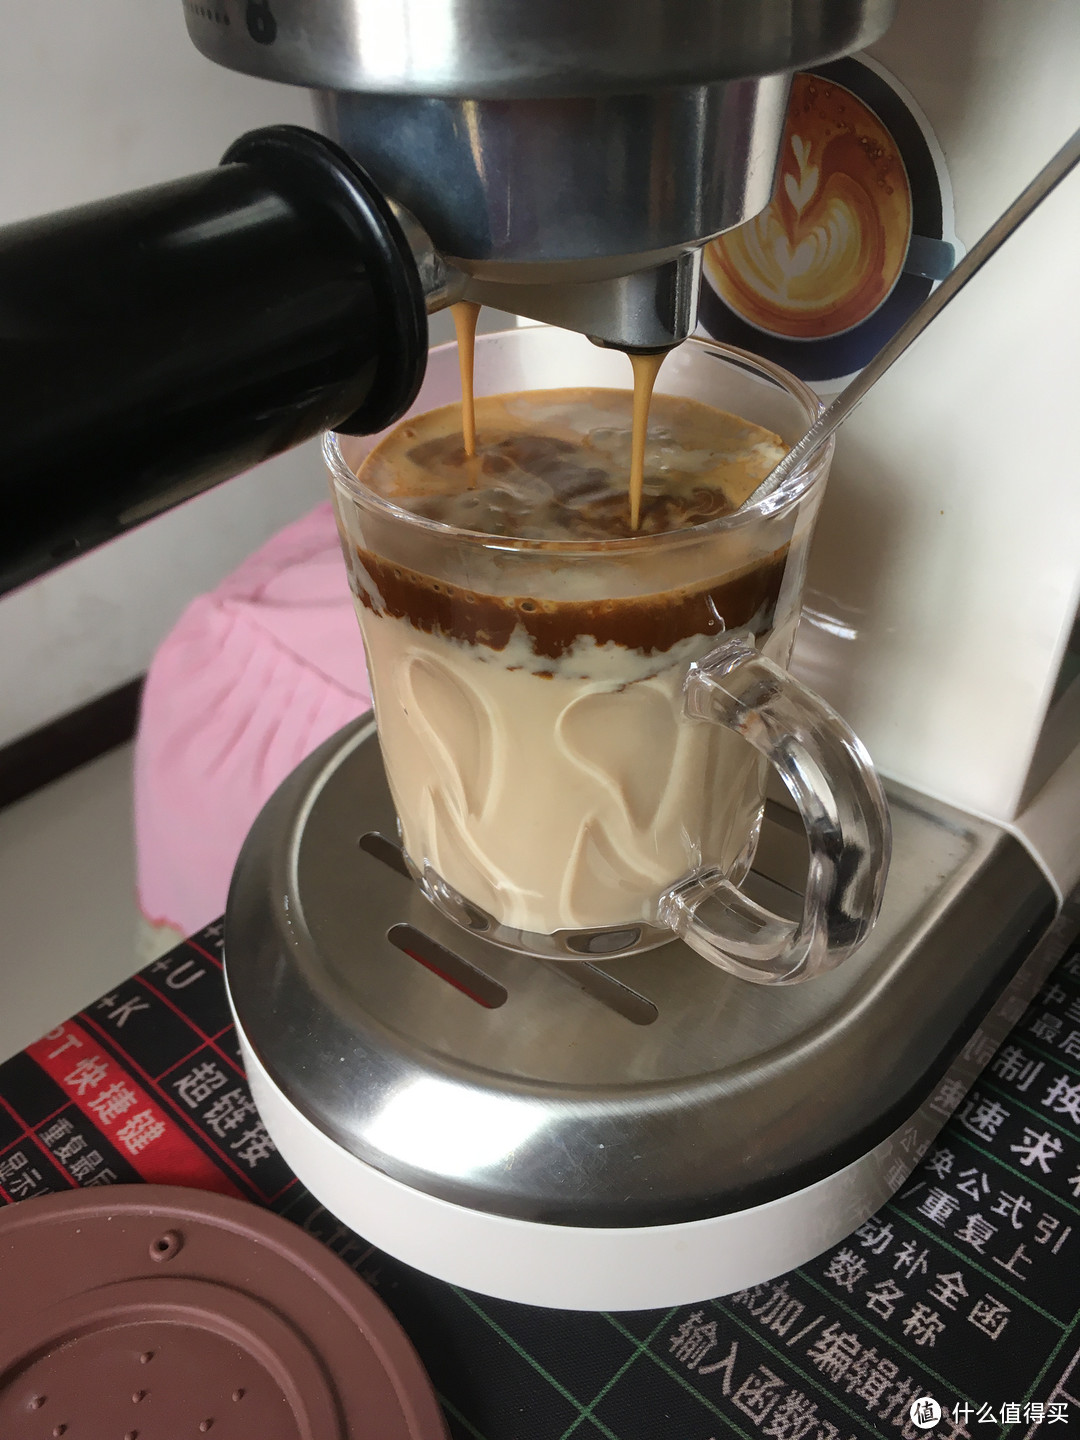 摁中间自动档，直接把浓缩咖啡液淋在老酸奶和薄荷脑上